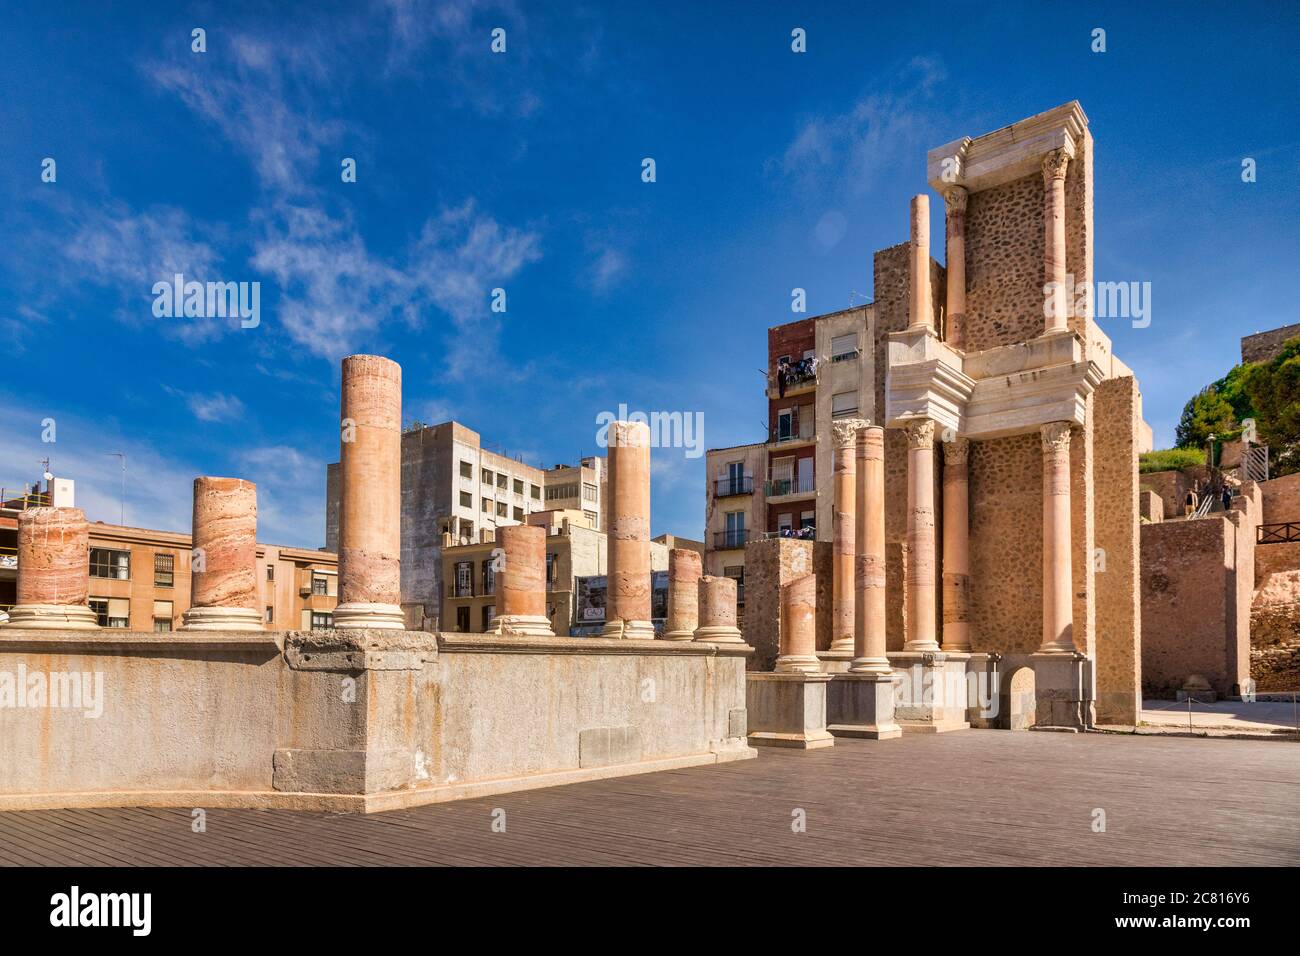 7 mars 2020: Cartagena, Espagne - pas de personnes reconnaissables dans le théâtre romain partiellement restauré de Cartagena, datant du règne d'Auguste. Banque D'Images